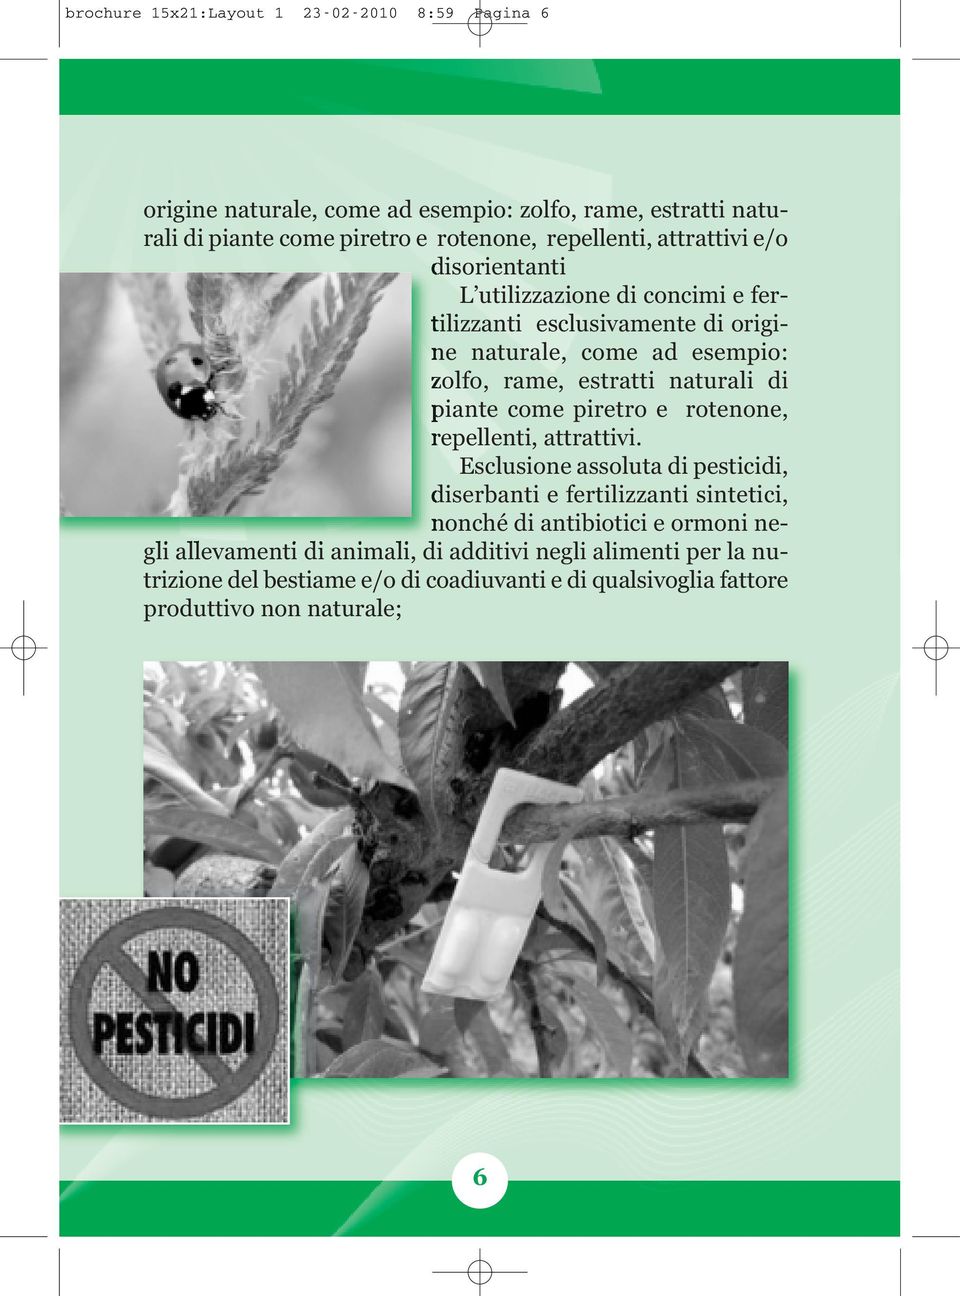 naturali di piante come piretro e rotenone, repellenti, attrattivi.